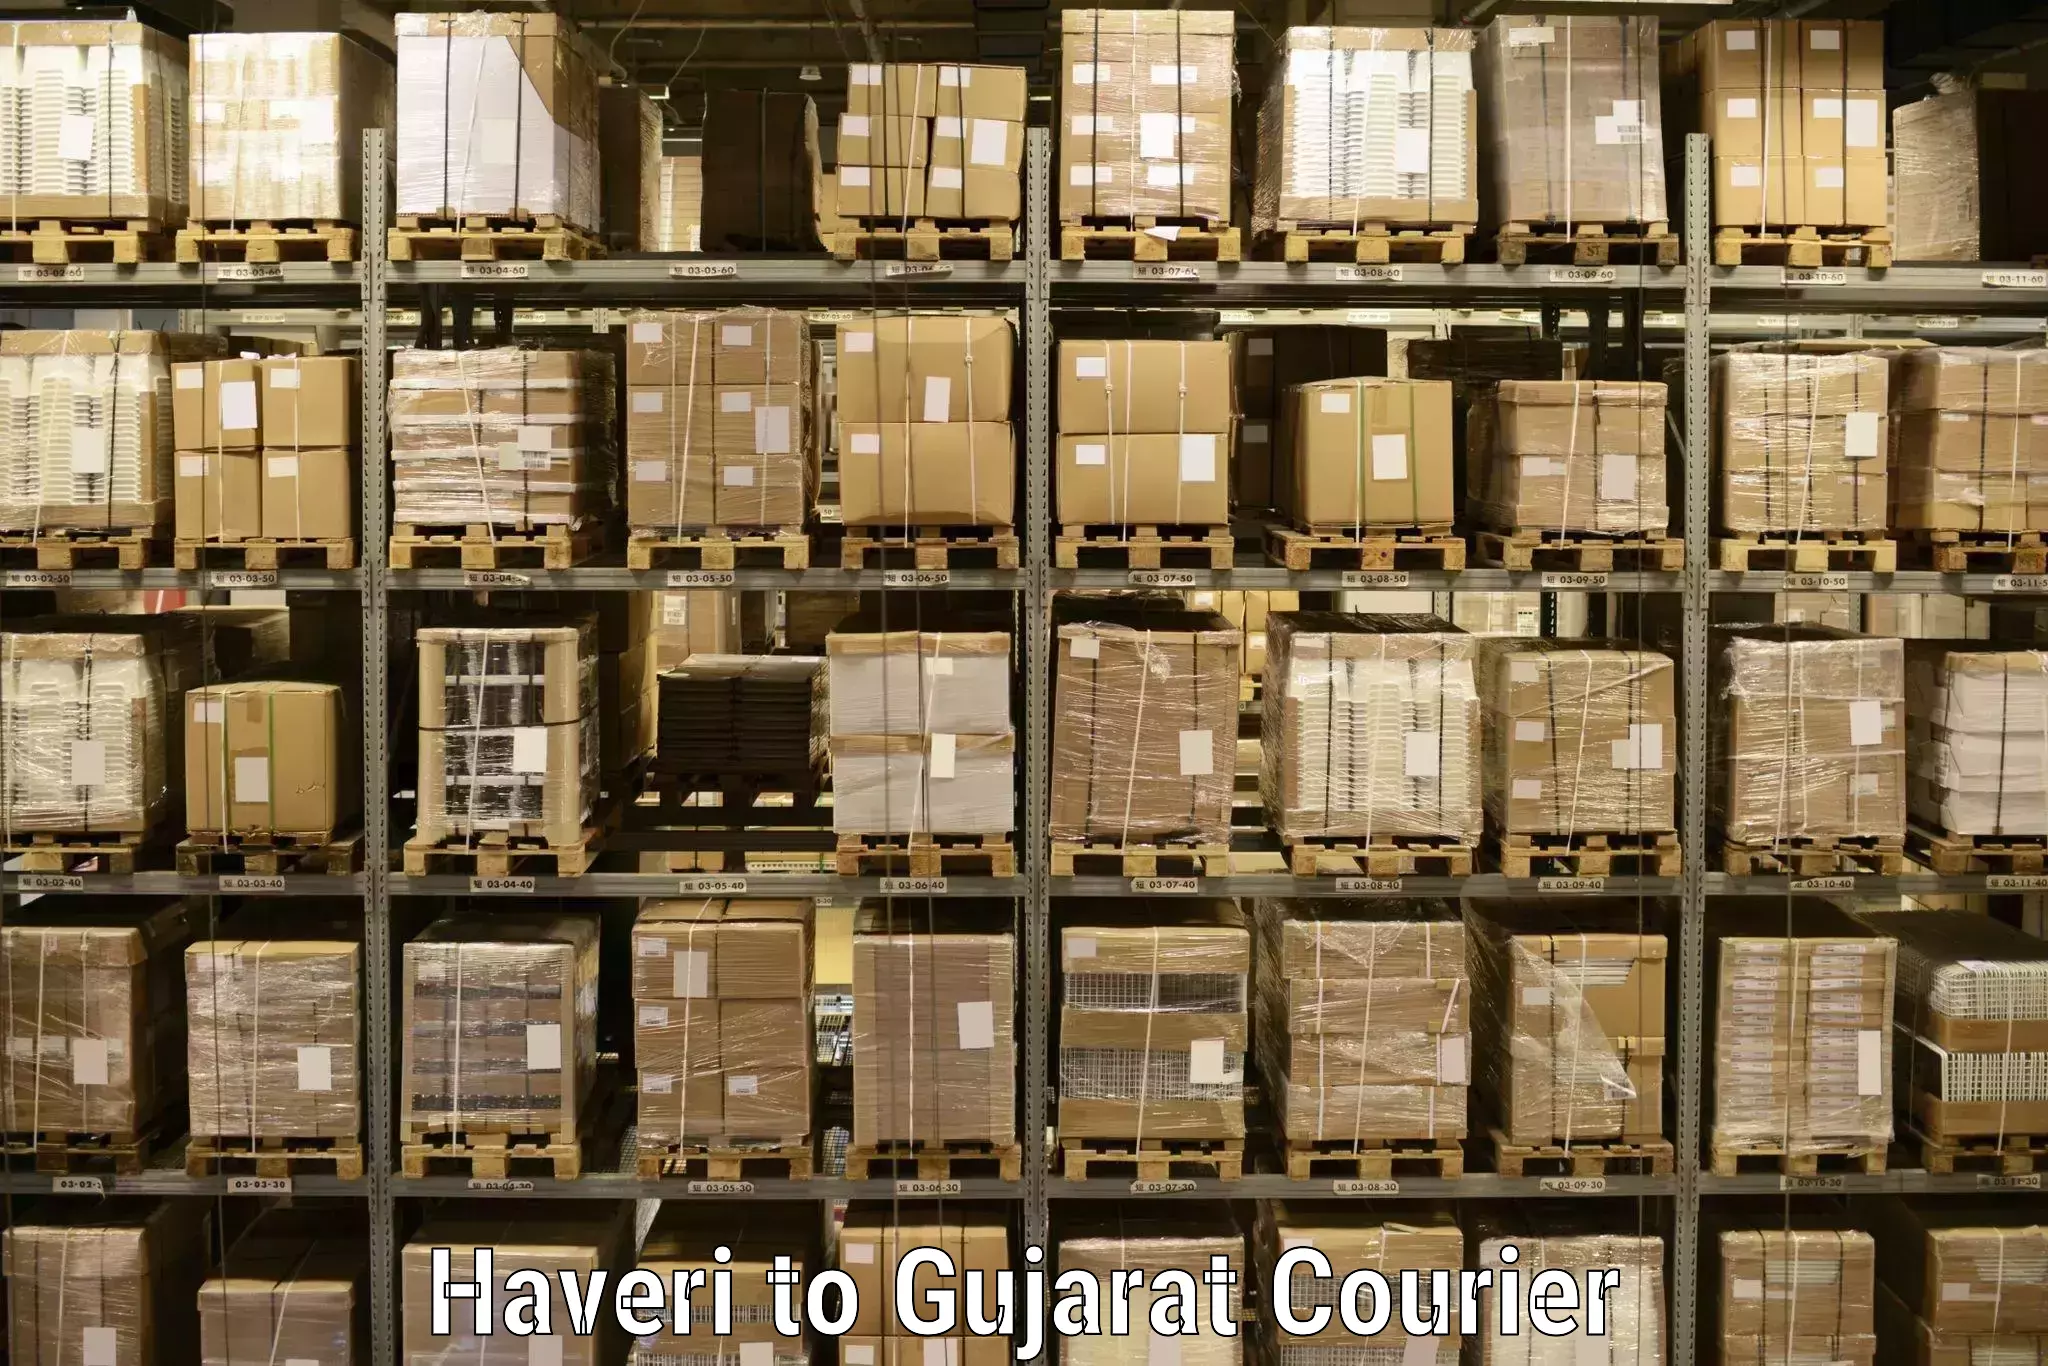 Courier service comparison Haveri to Gandhinagar